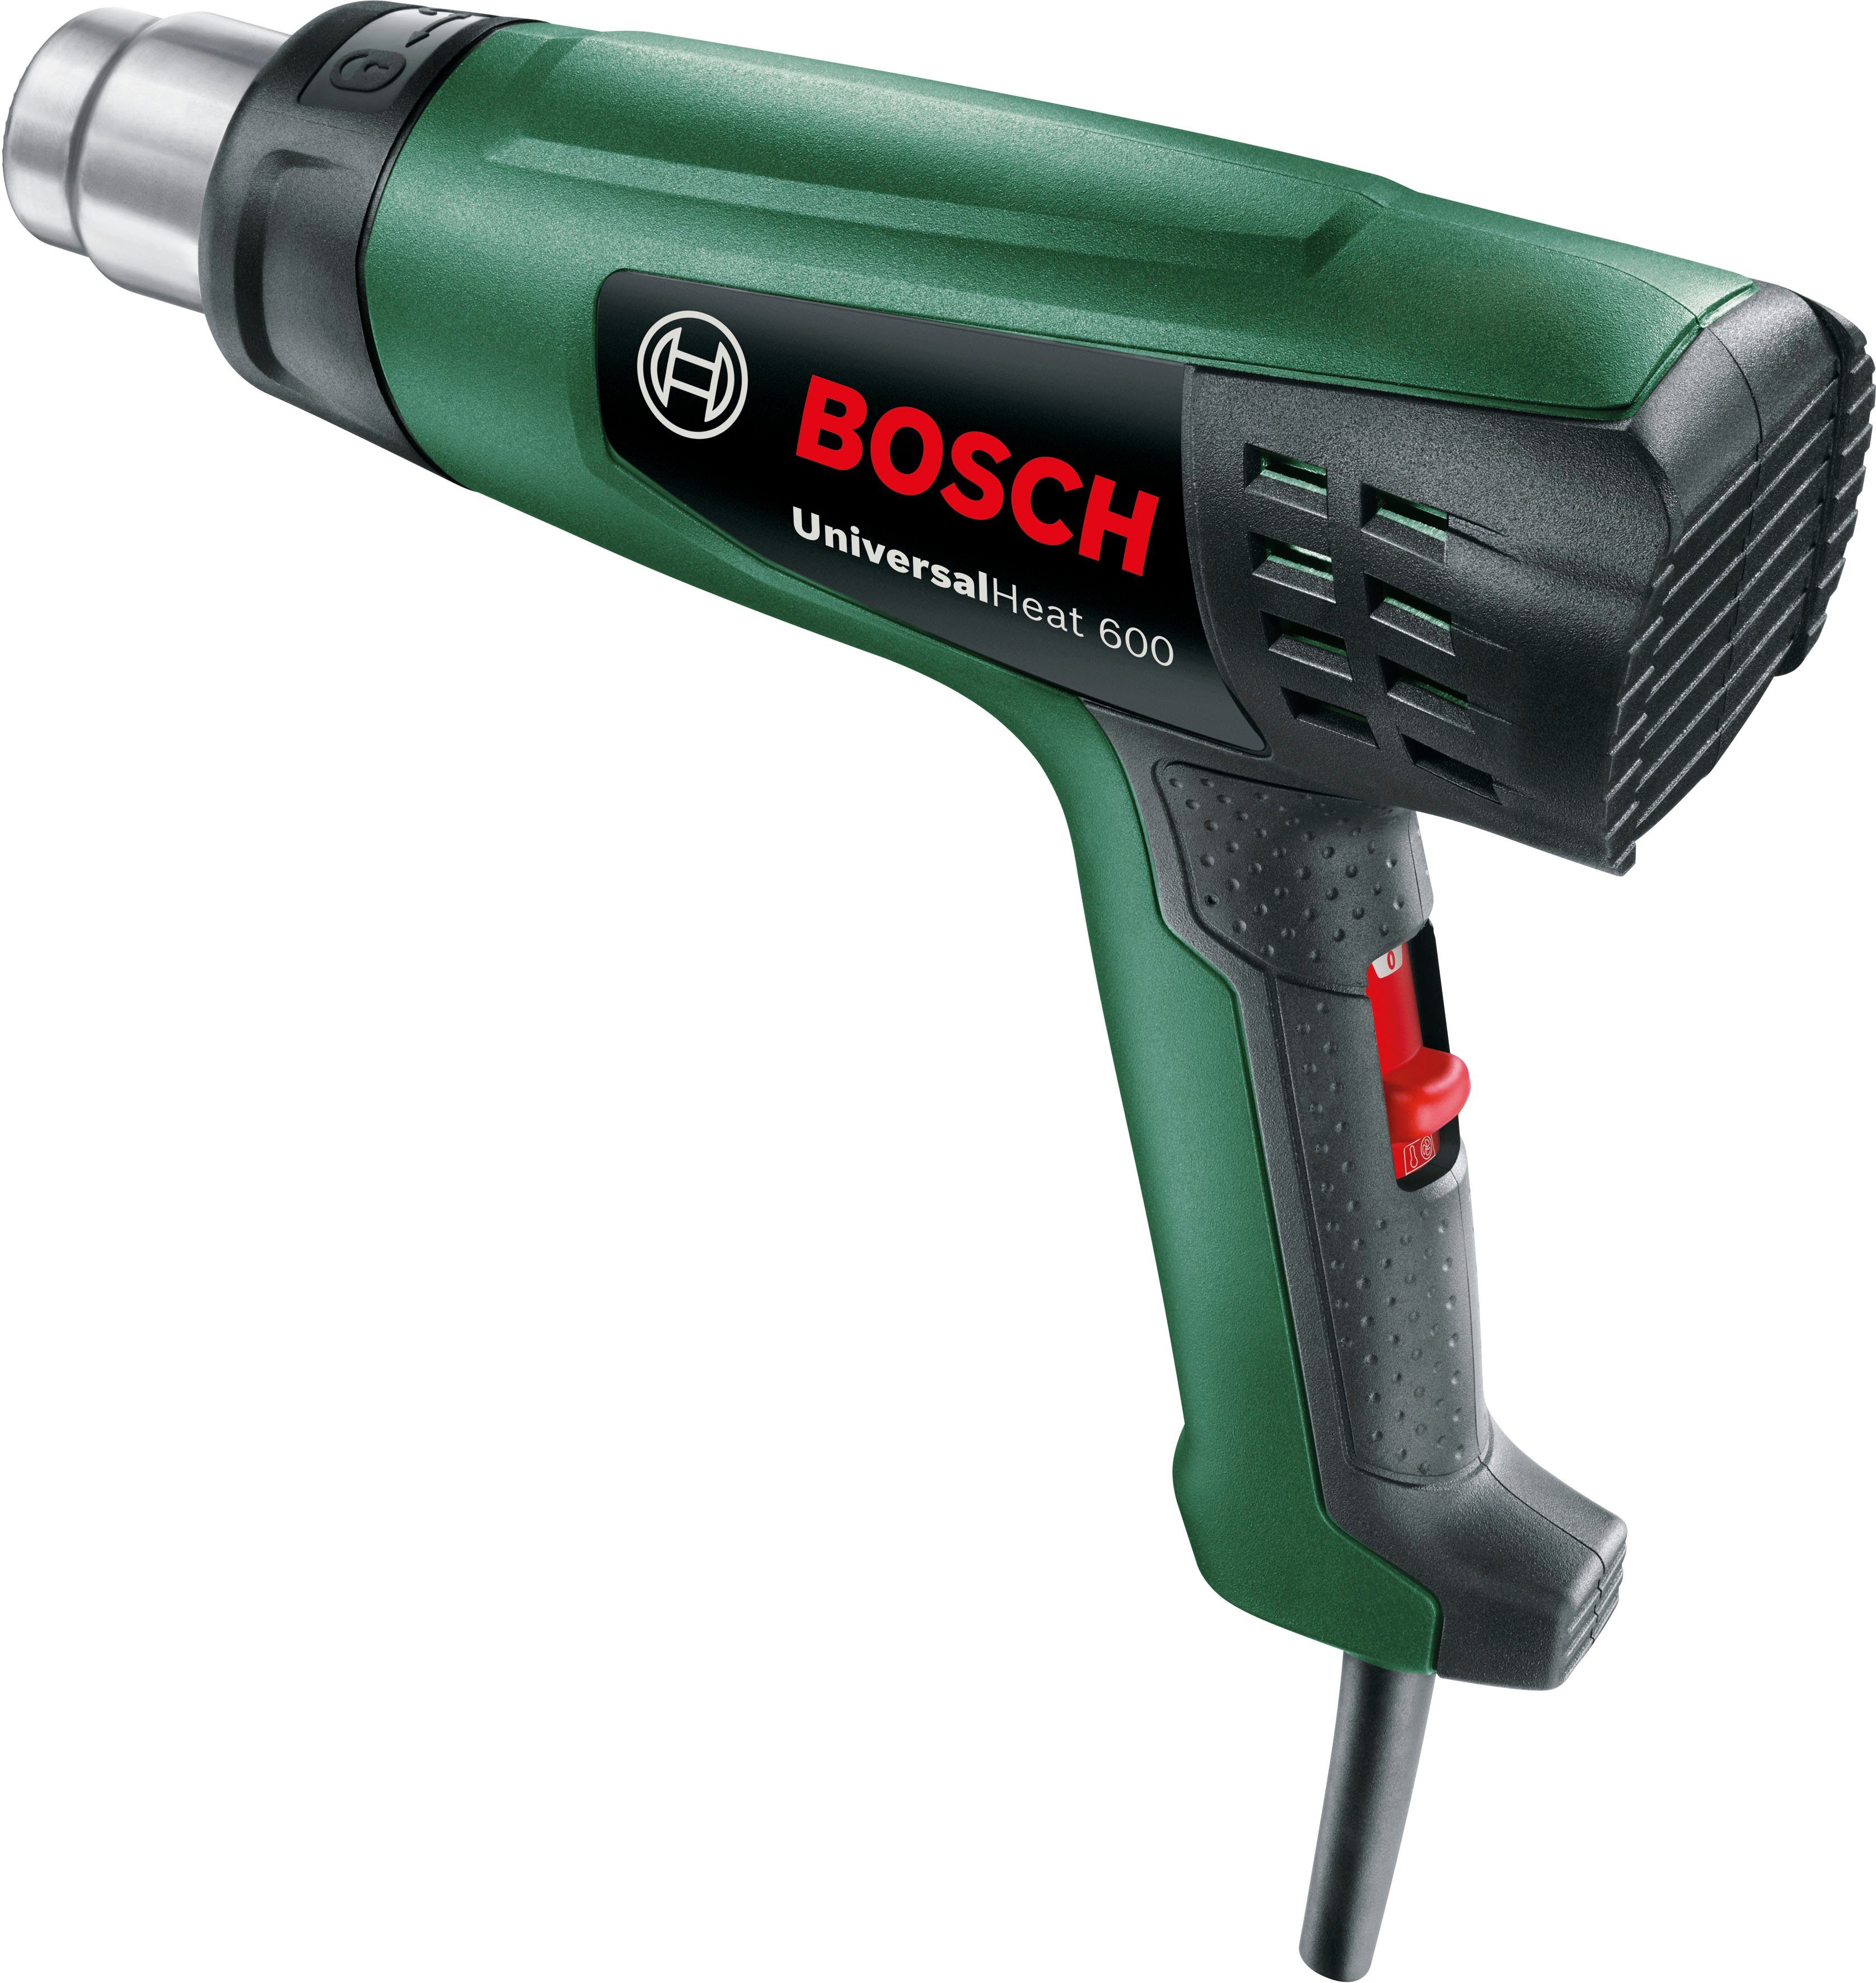 °C Home & Bosch max. Heißluftgebläse 600 Garden UniversalHeat bis 600,